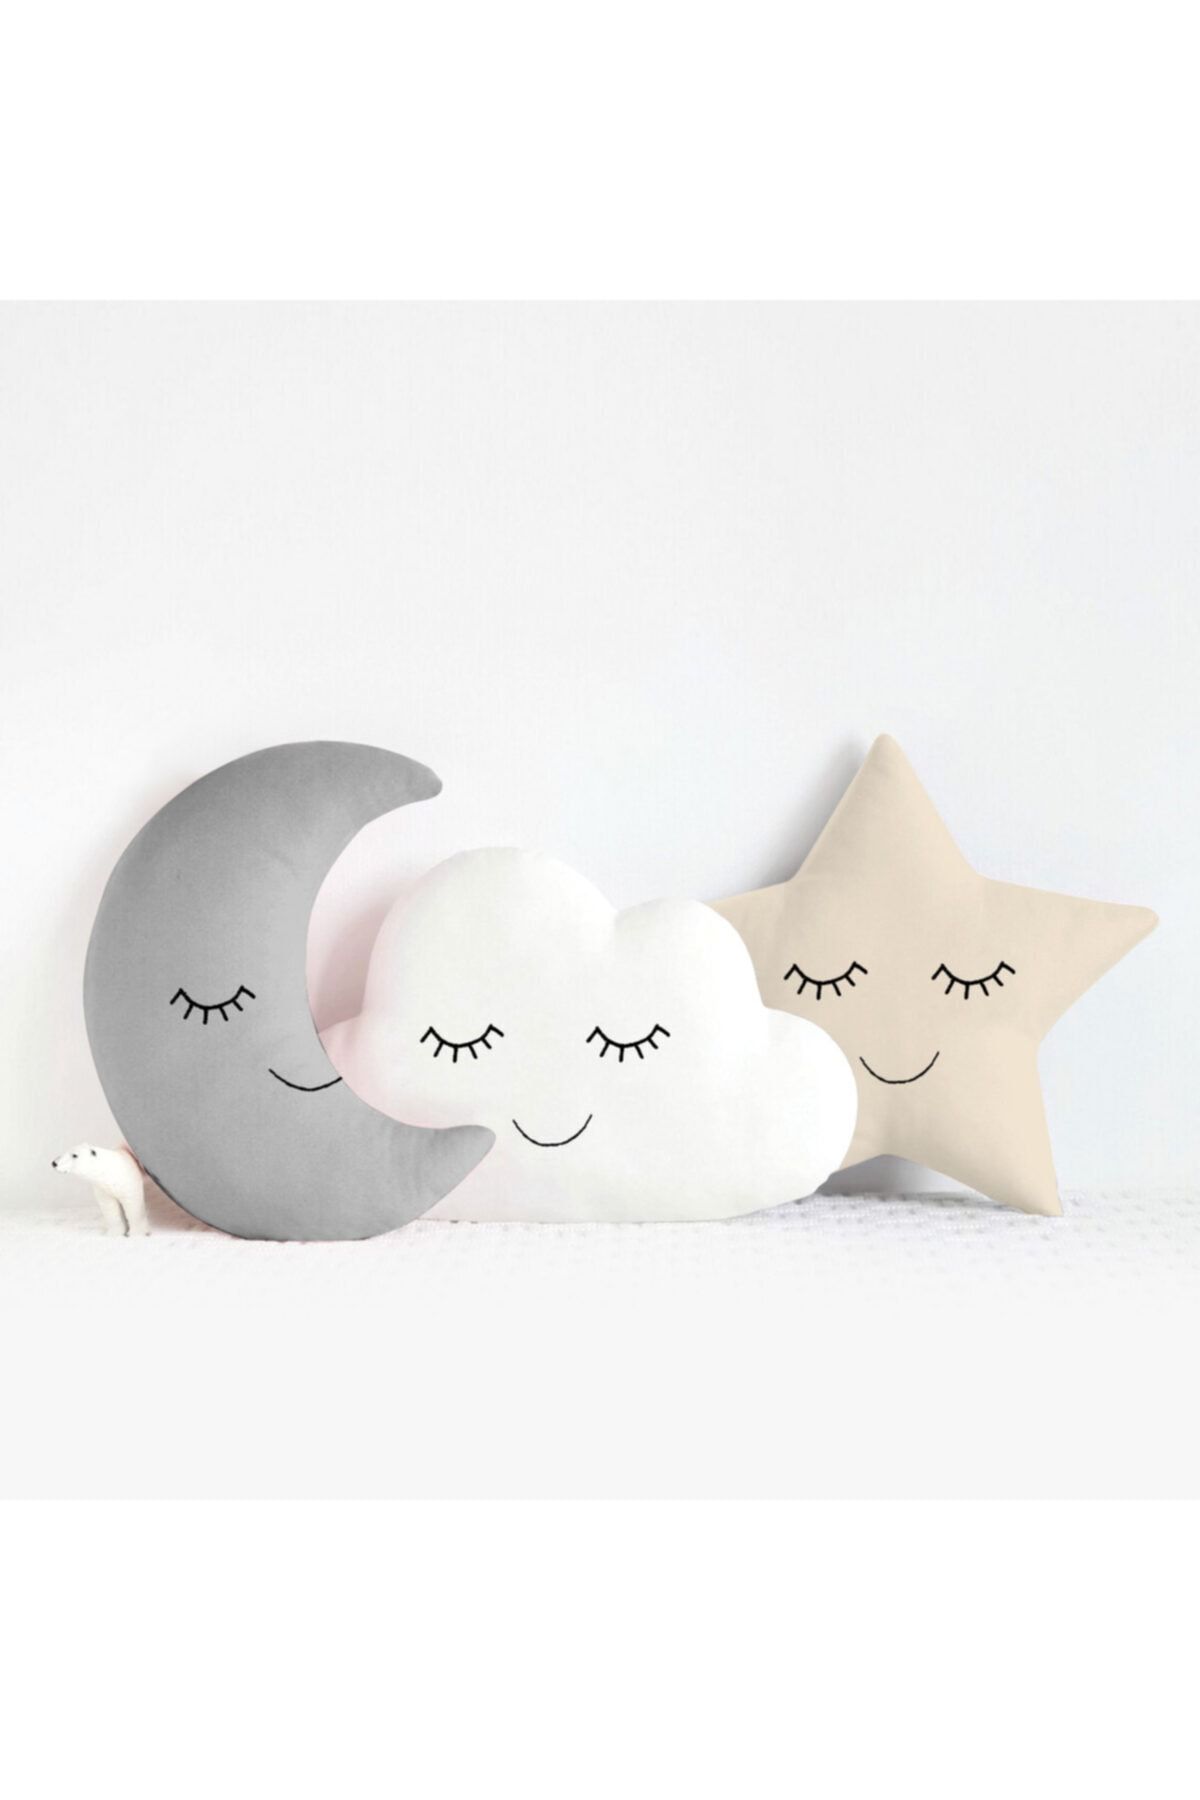 Miomundo Bebek Ve Çocuk Odası Ay-yıldız-bulut Uyku Arkadaşları Süs Yastıkları Üçlü Kombin Gri Beyaz Bej